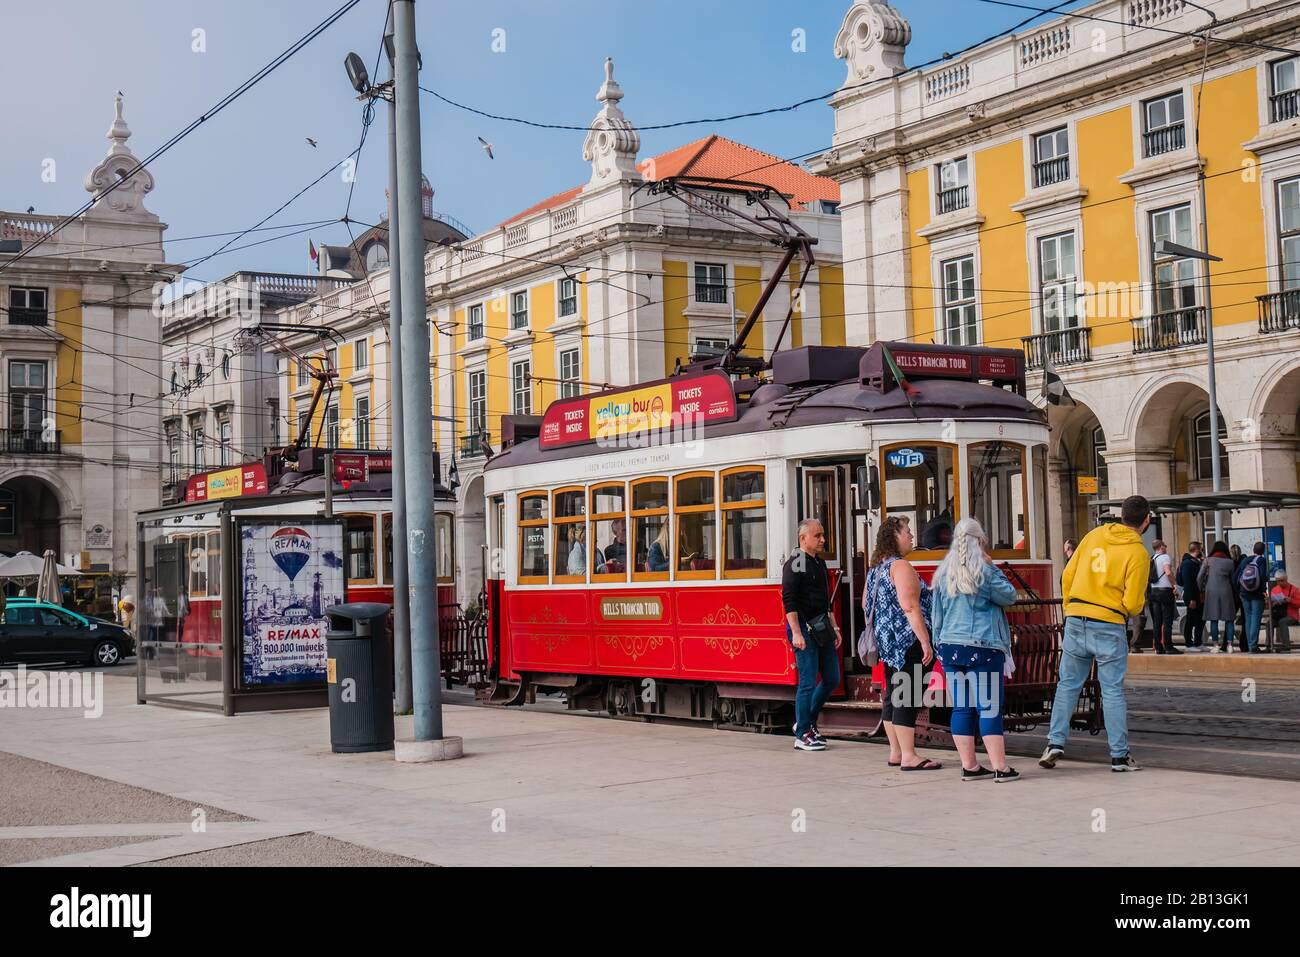 i turisti che arrivano a bordo di un tram rosso in piazza commerciale a lisbona, portogallo europa Foto Stock